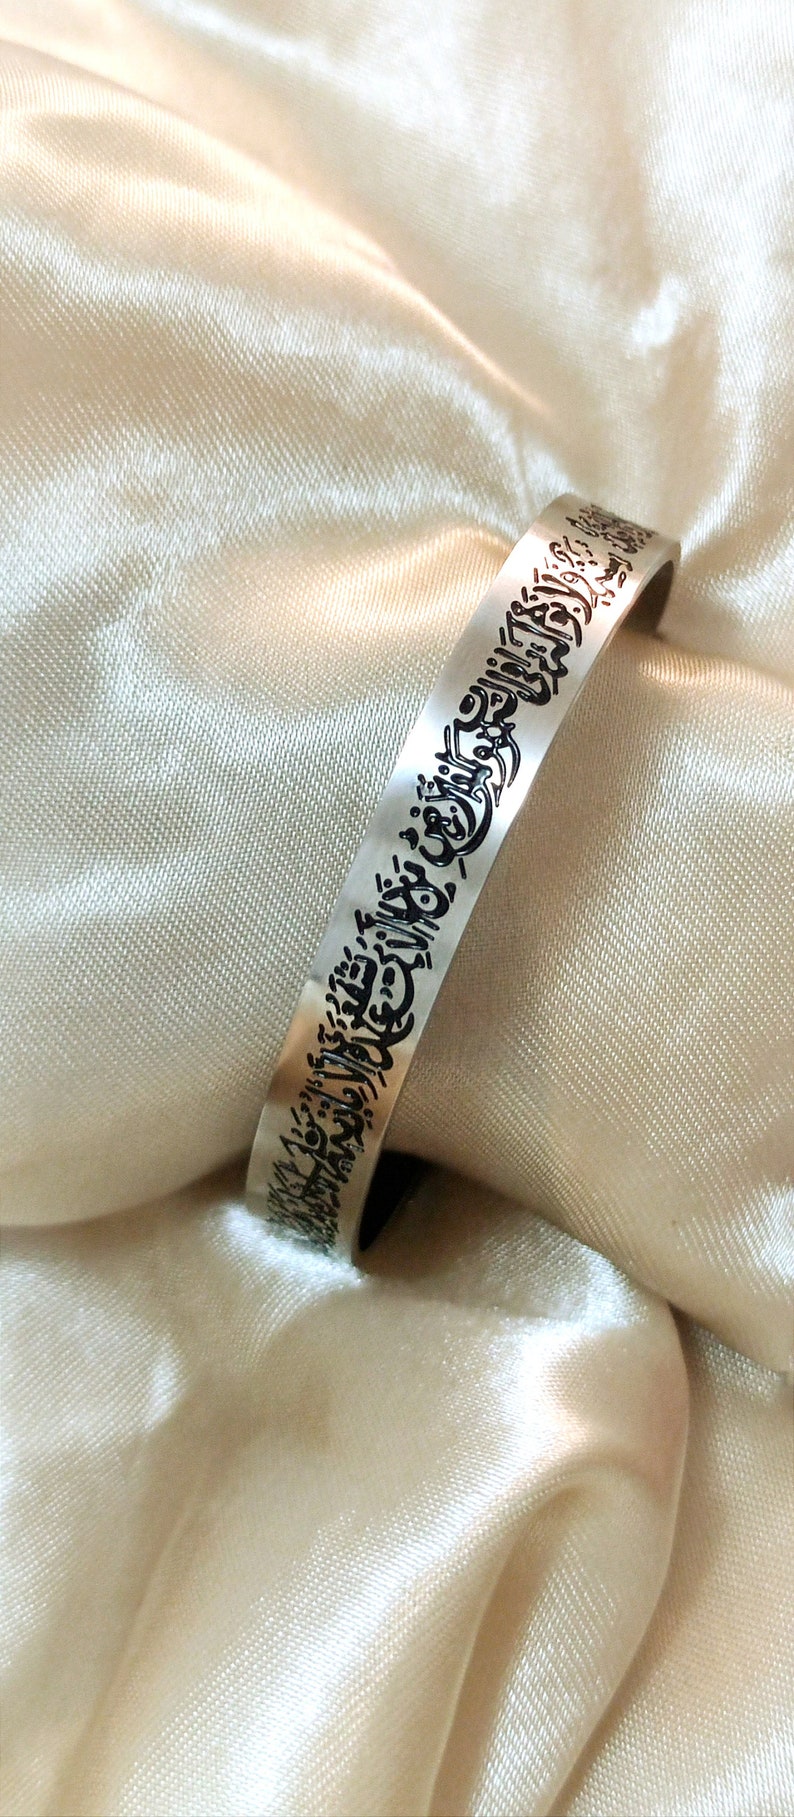 Ayatul kursi moderne en verfijnde islamitische verstelbare armband voor heren _ Vers van de troon afbeelding 2